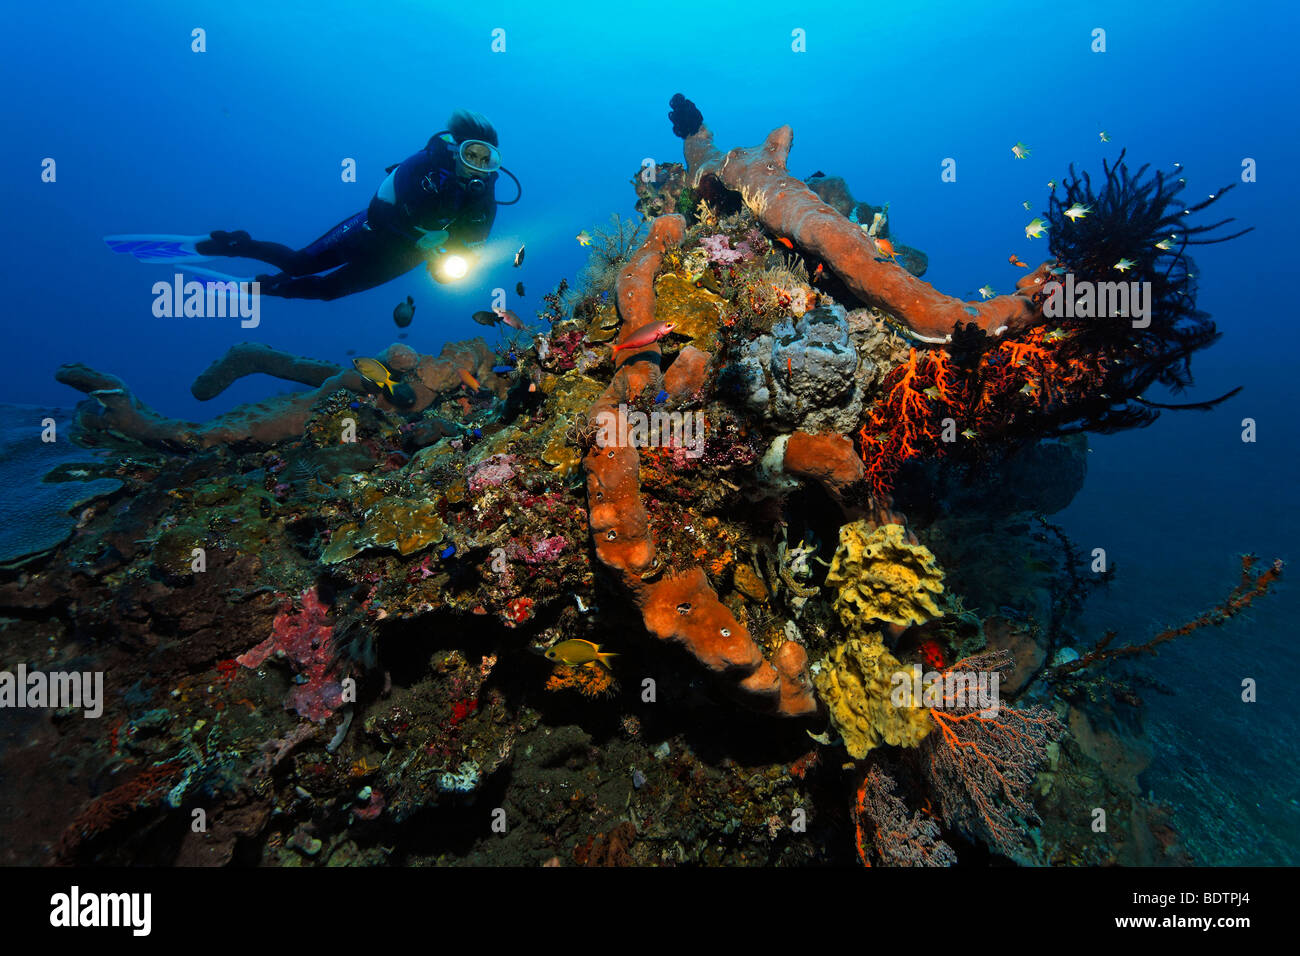 Bloc de corail, plongée sous marine, diverses sortes d'éponges, de coraux, de poissons, d'étoiles, mini-récif, Sandy Ground, Bali, moindre Sund Banque D'Images